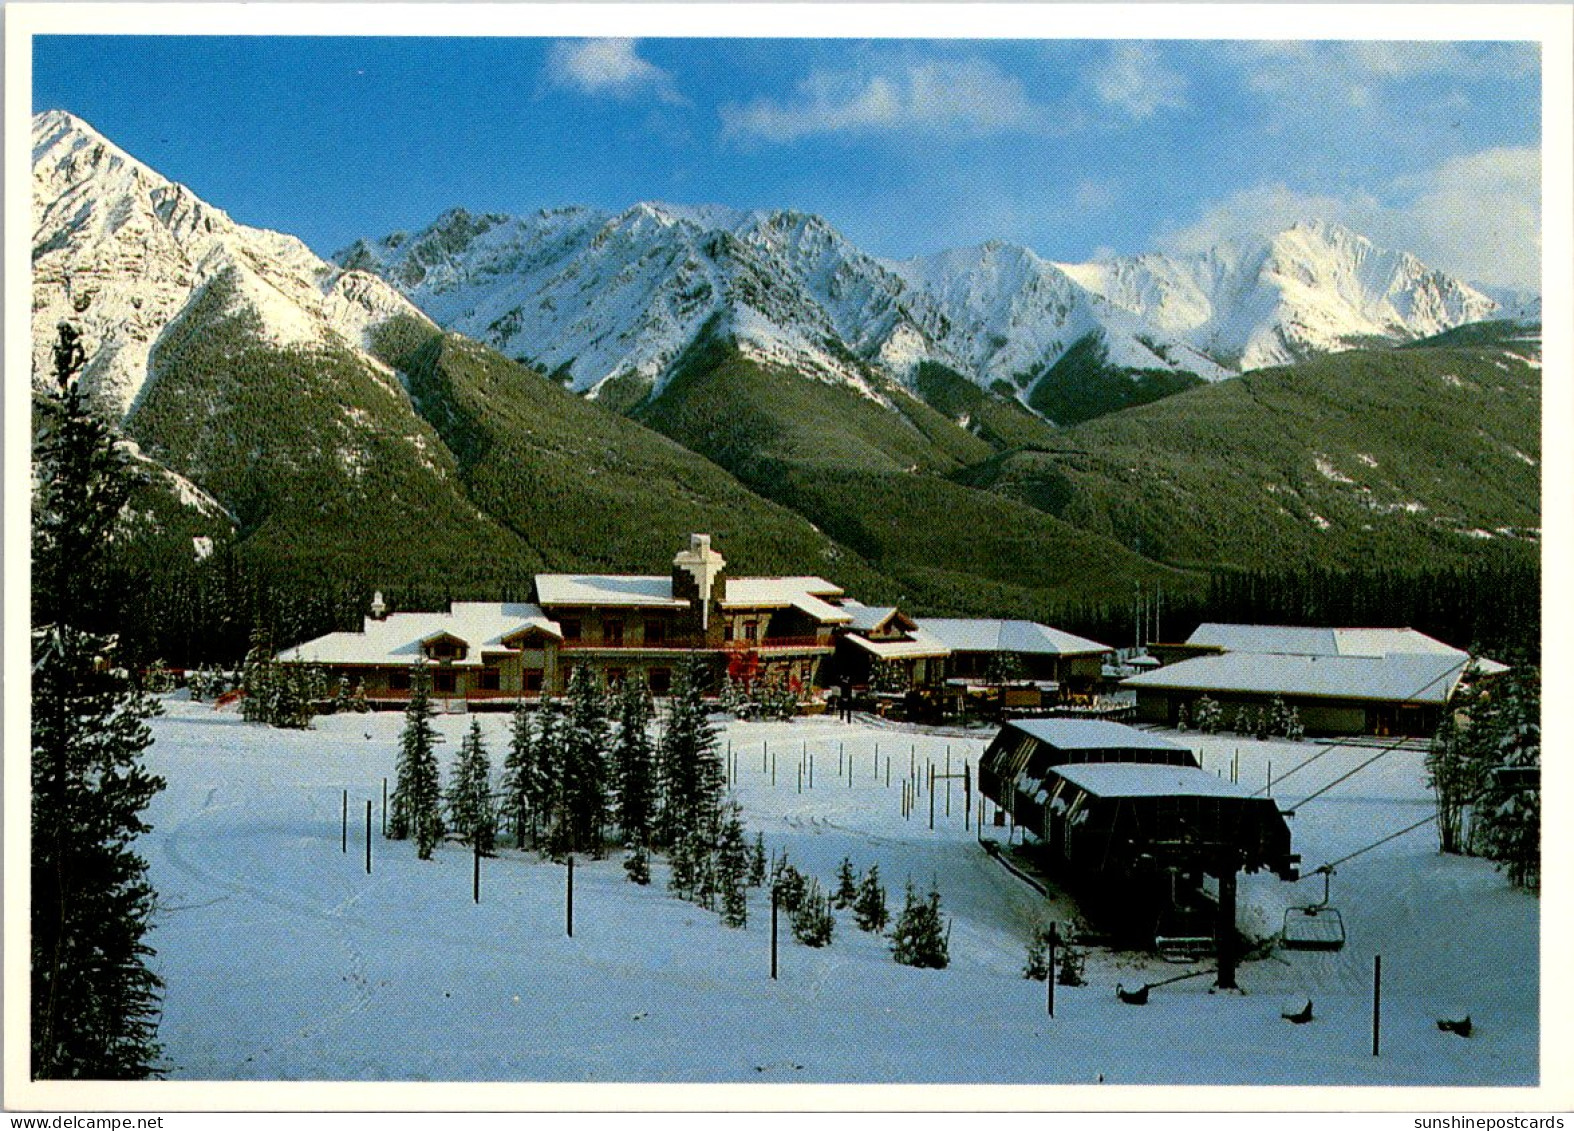 Canada Calgary Nakiska At Mount Allan Day Lodge Site Of The 1988 Winter Olympics - Calgary